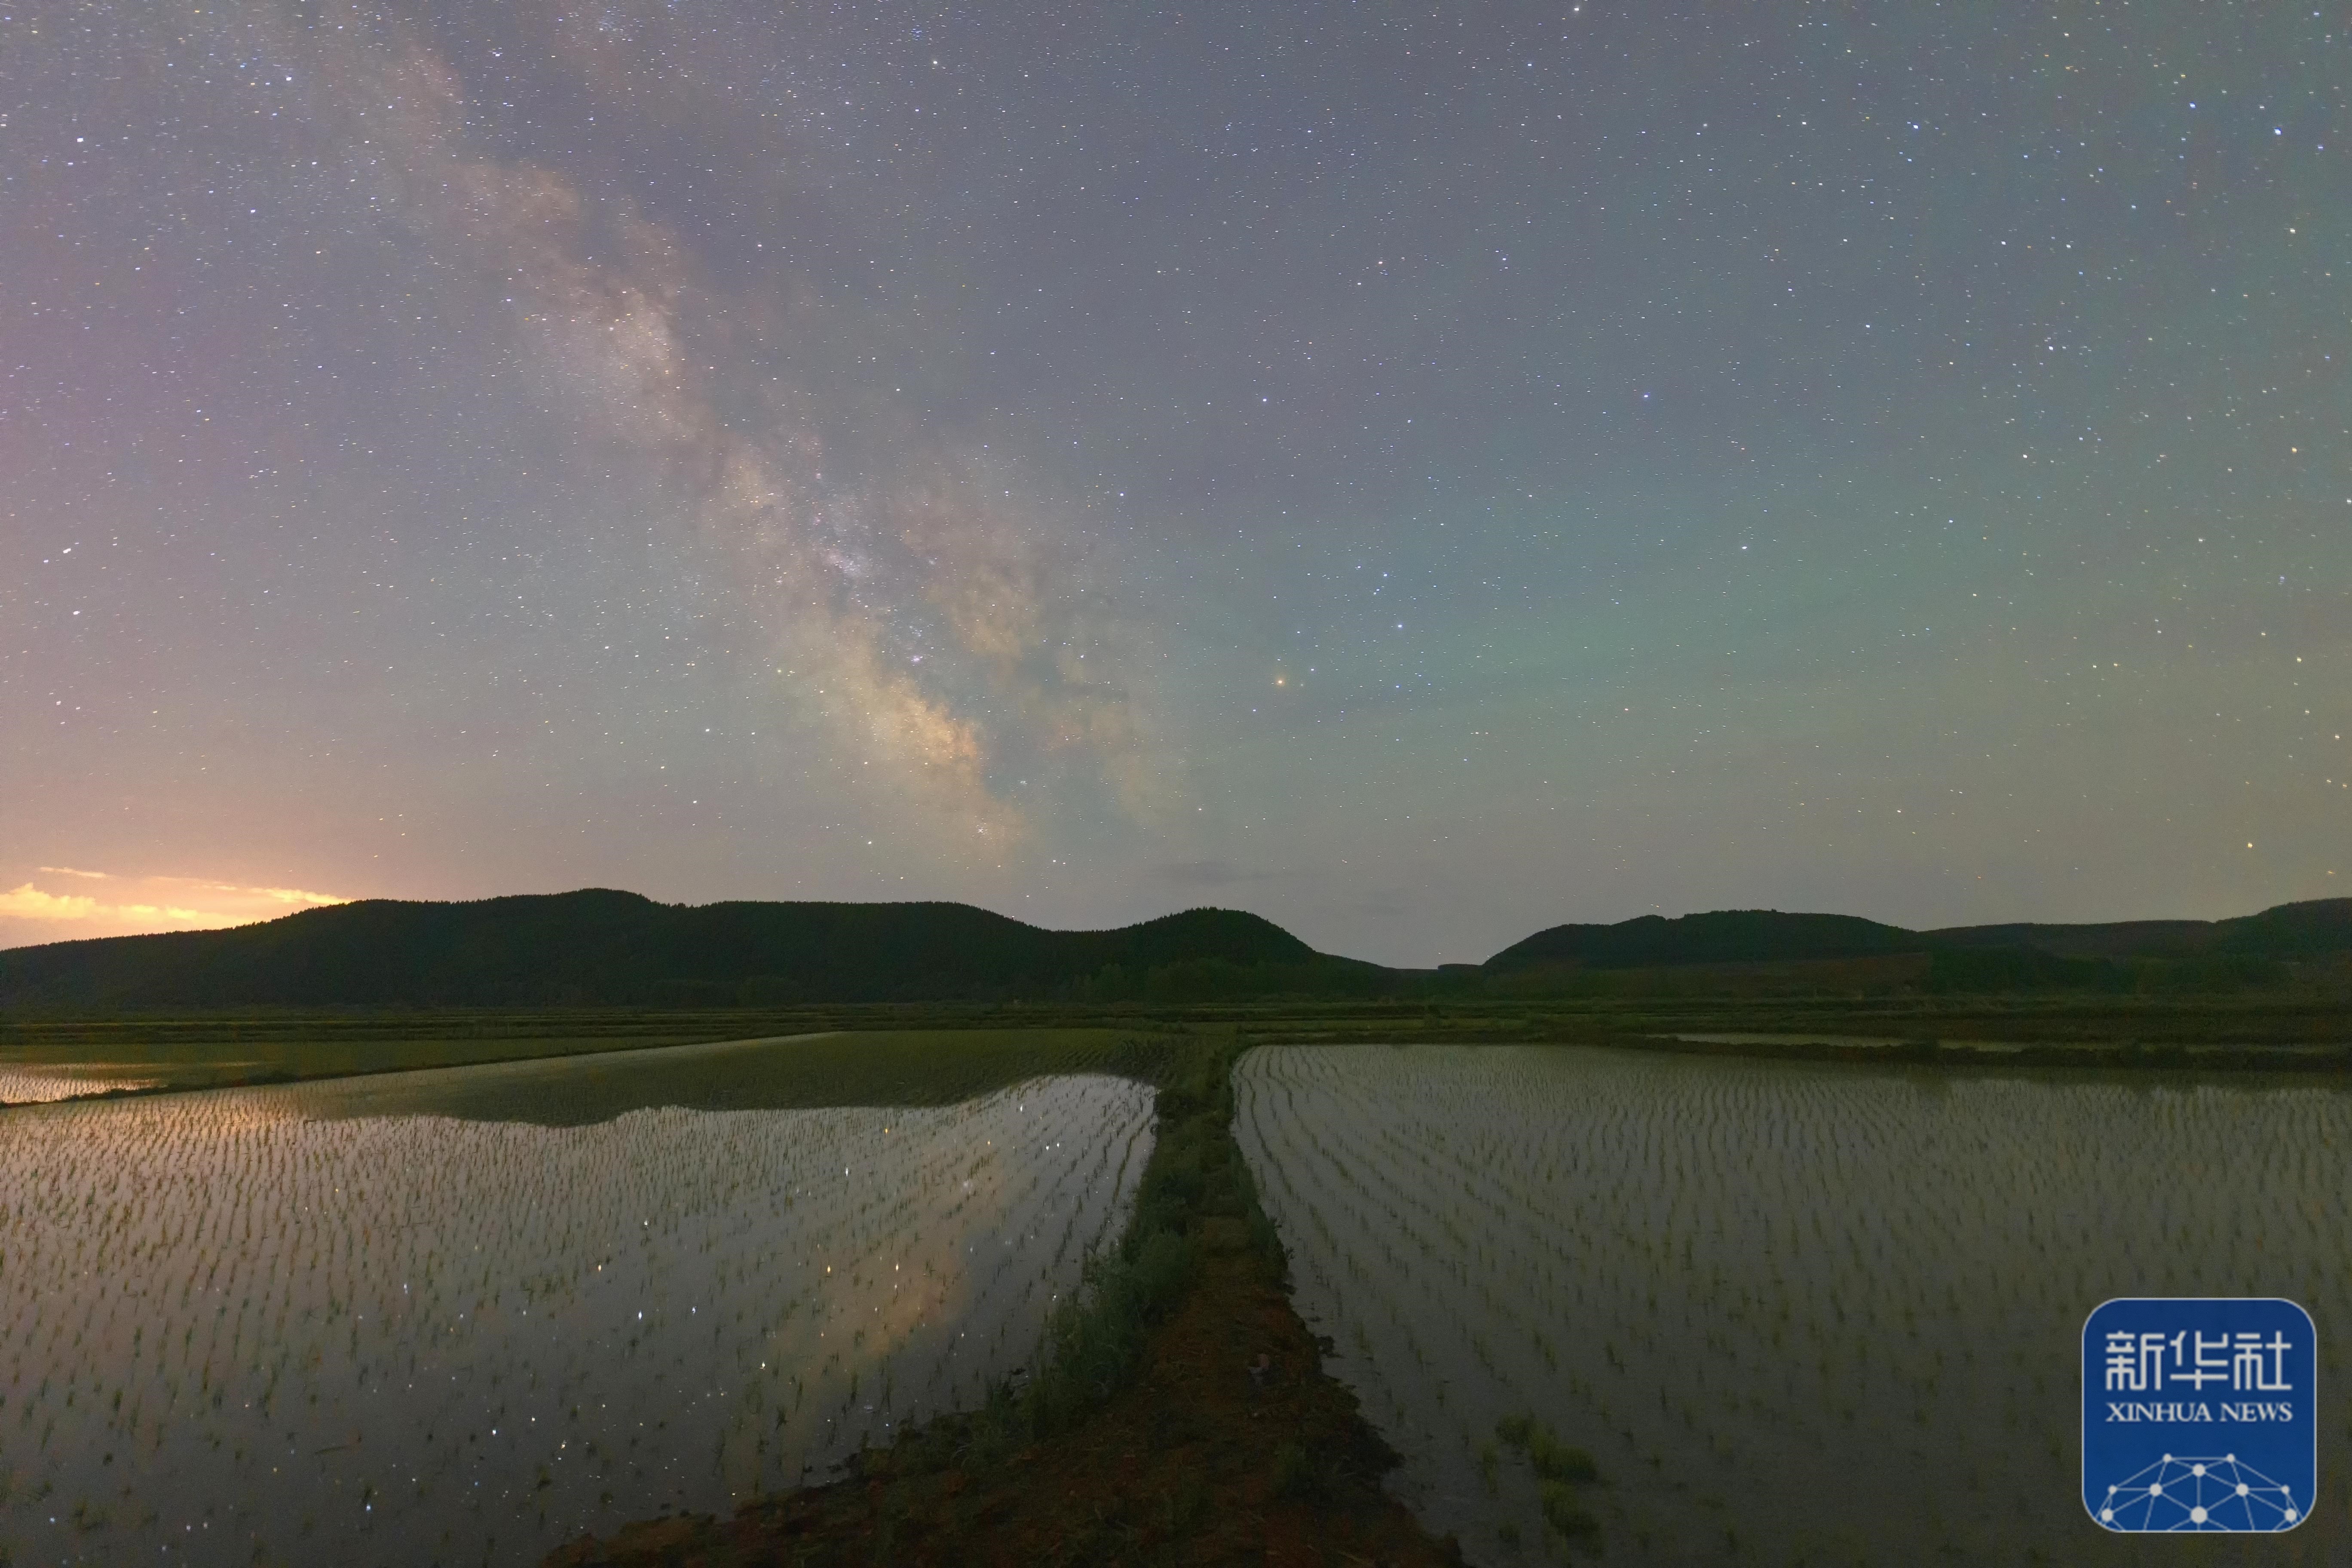 黑龙江省佳木斯富锦市的一处待插秧的稻田与星空相映成景